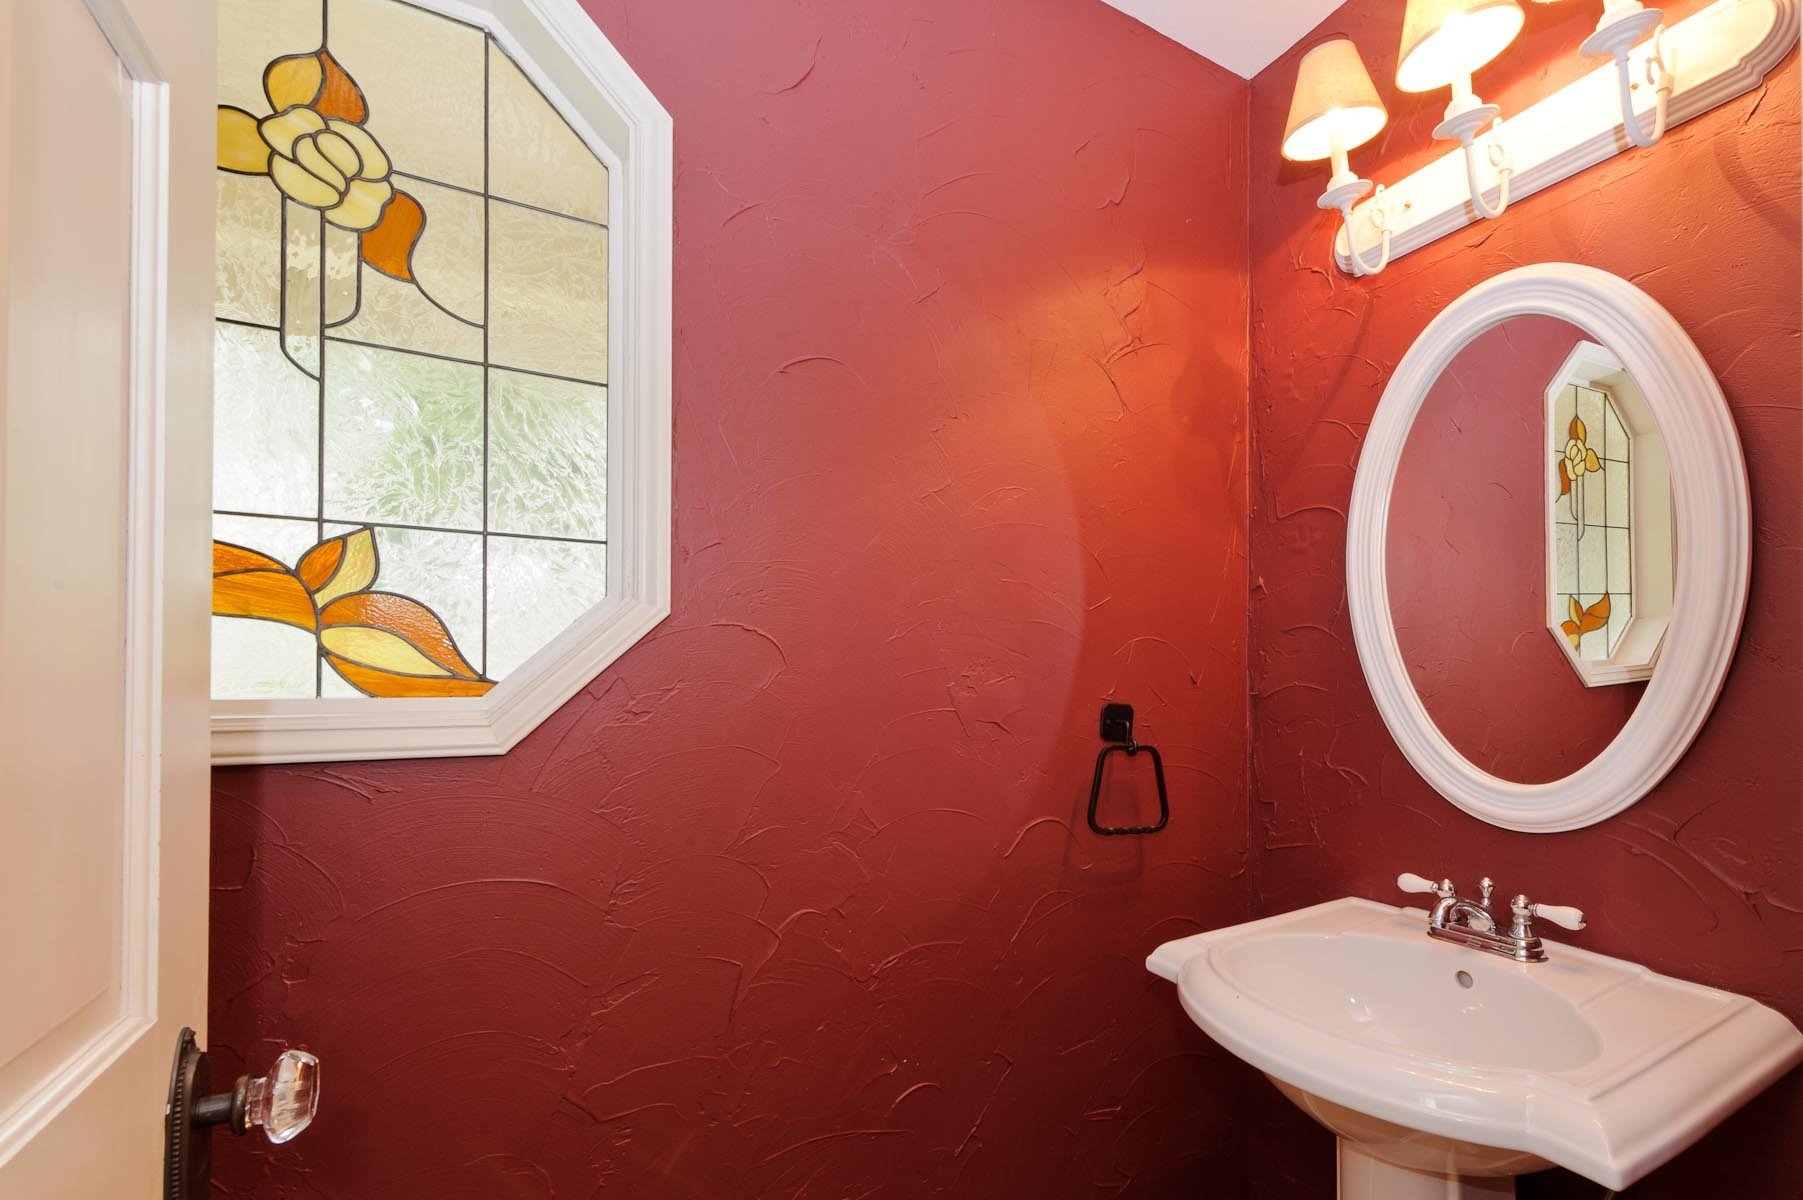 Чем покрасить стены в ванной вместо плитки